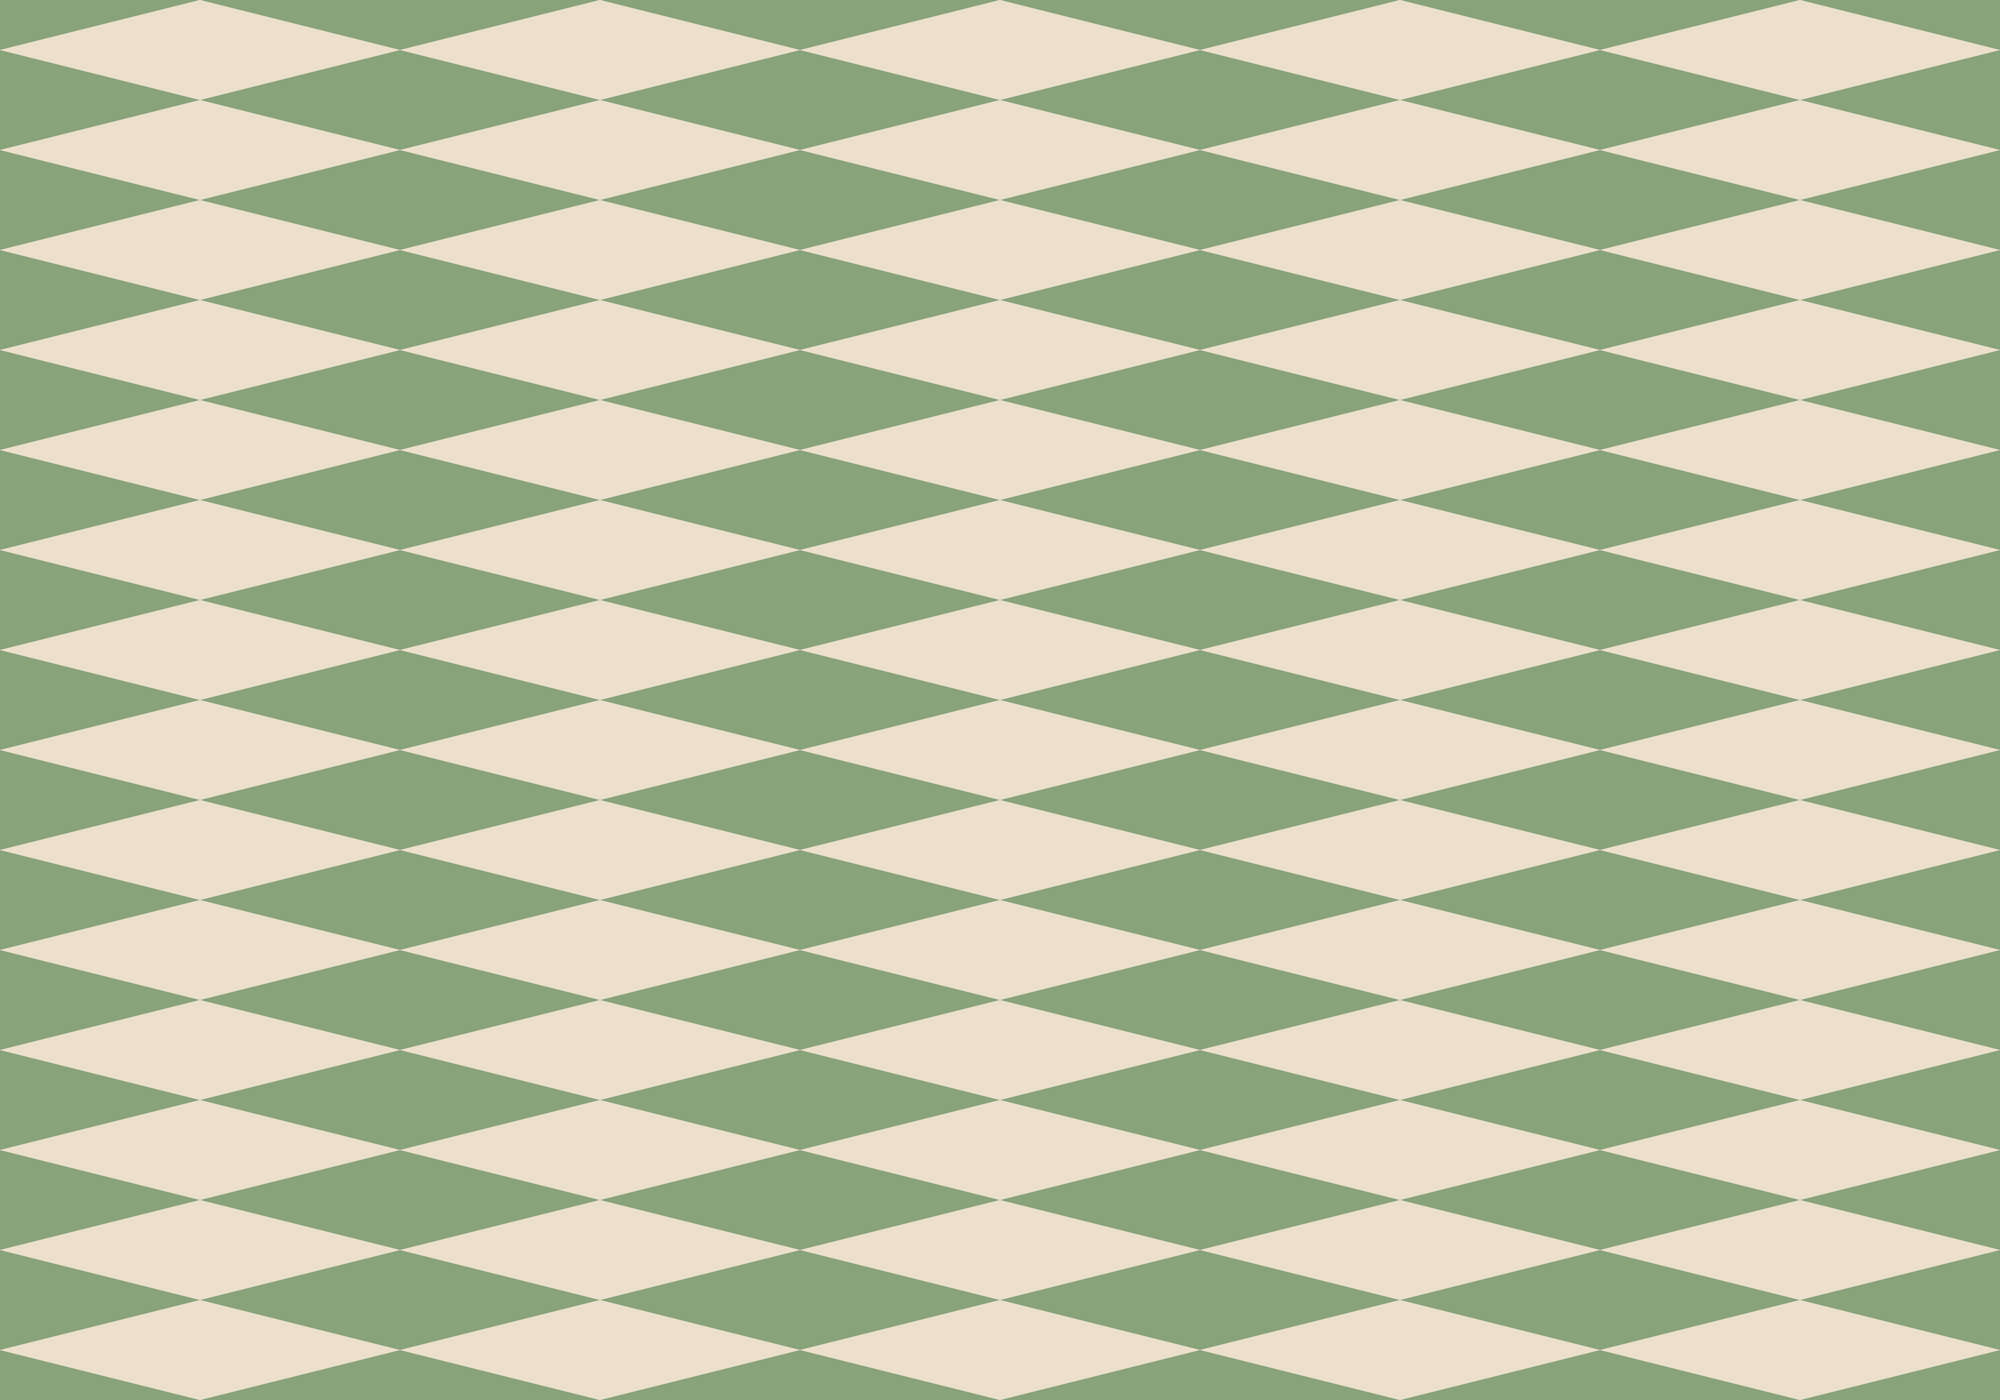             70s look diamond pattern wallpaper - Green, Beige | Pearl smooth fleece
        